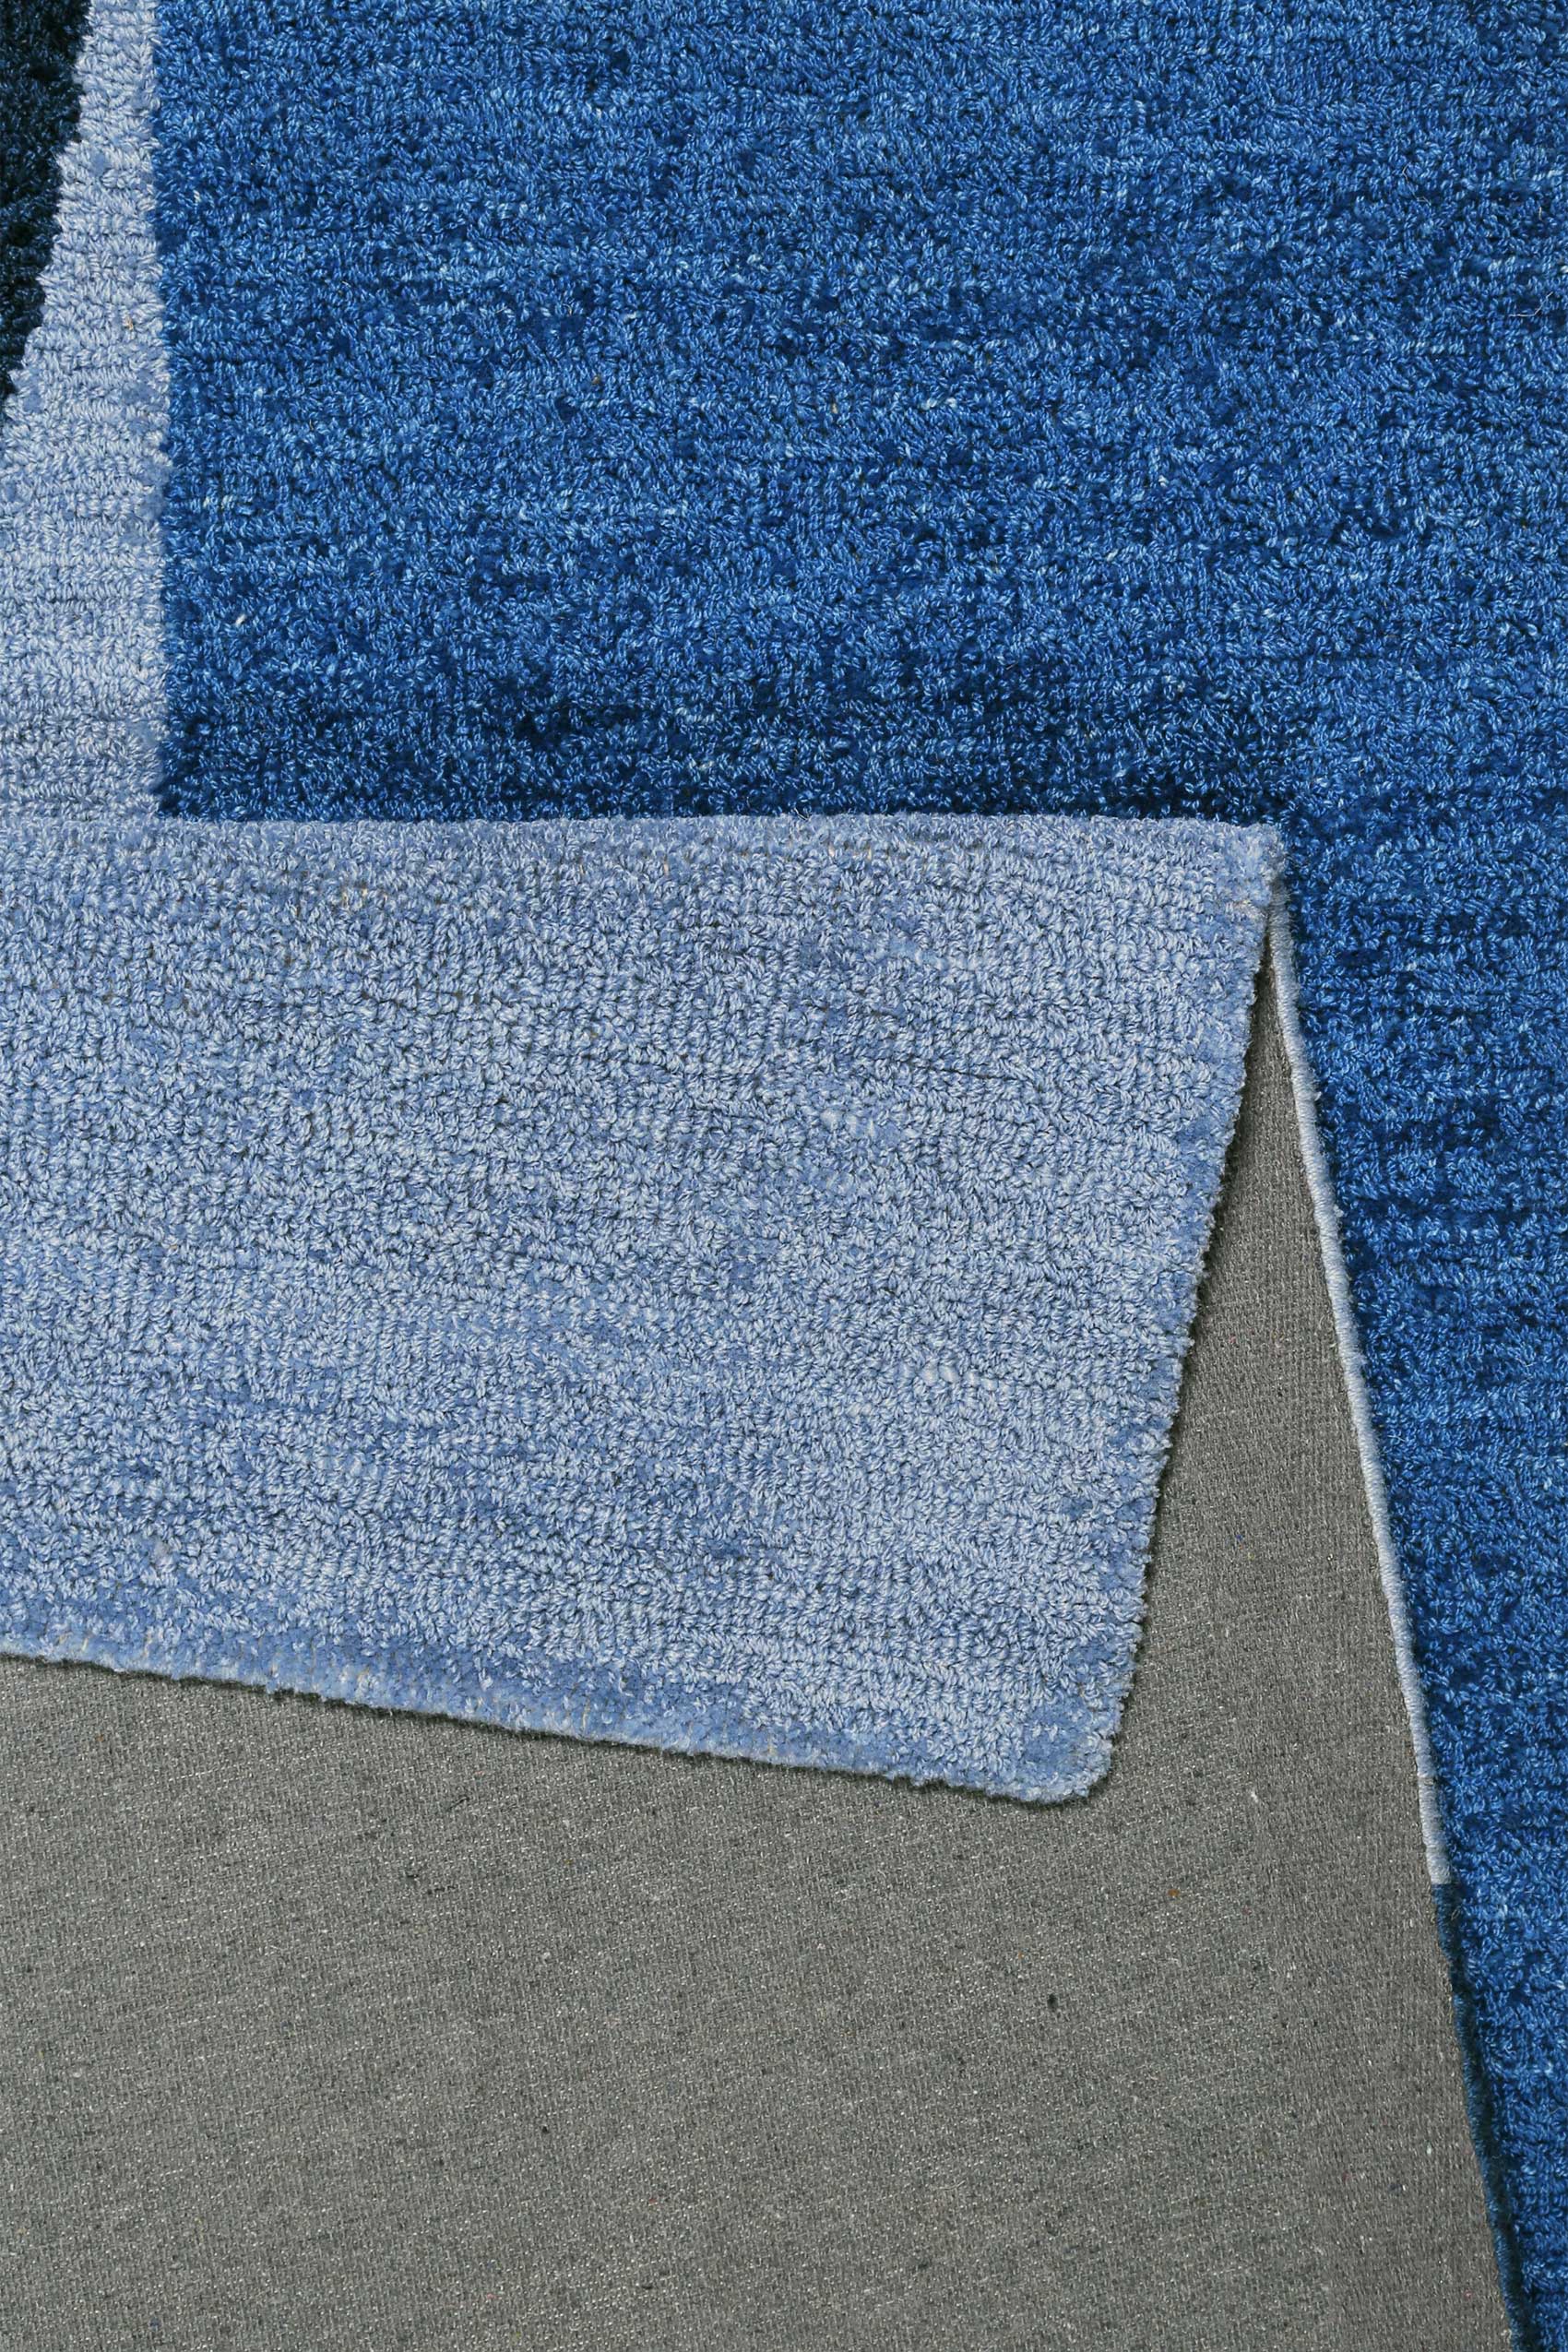 Esprit Kurzflor Teppich Blau » Backup « - Ansicht 3